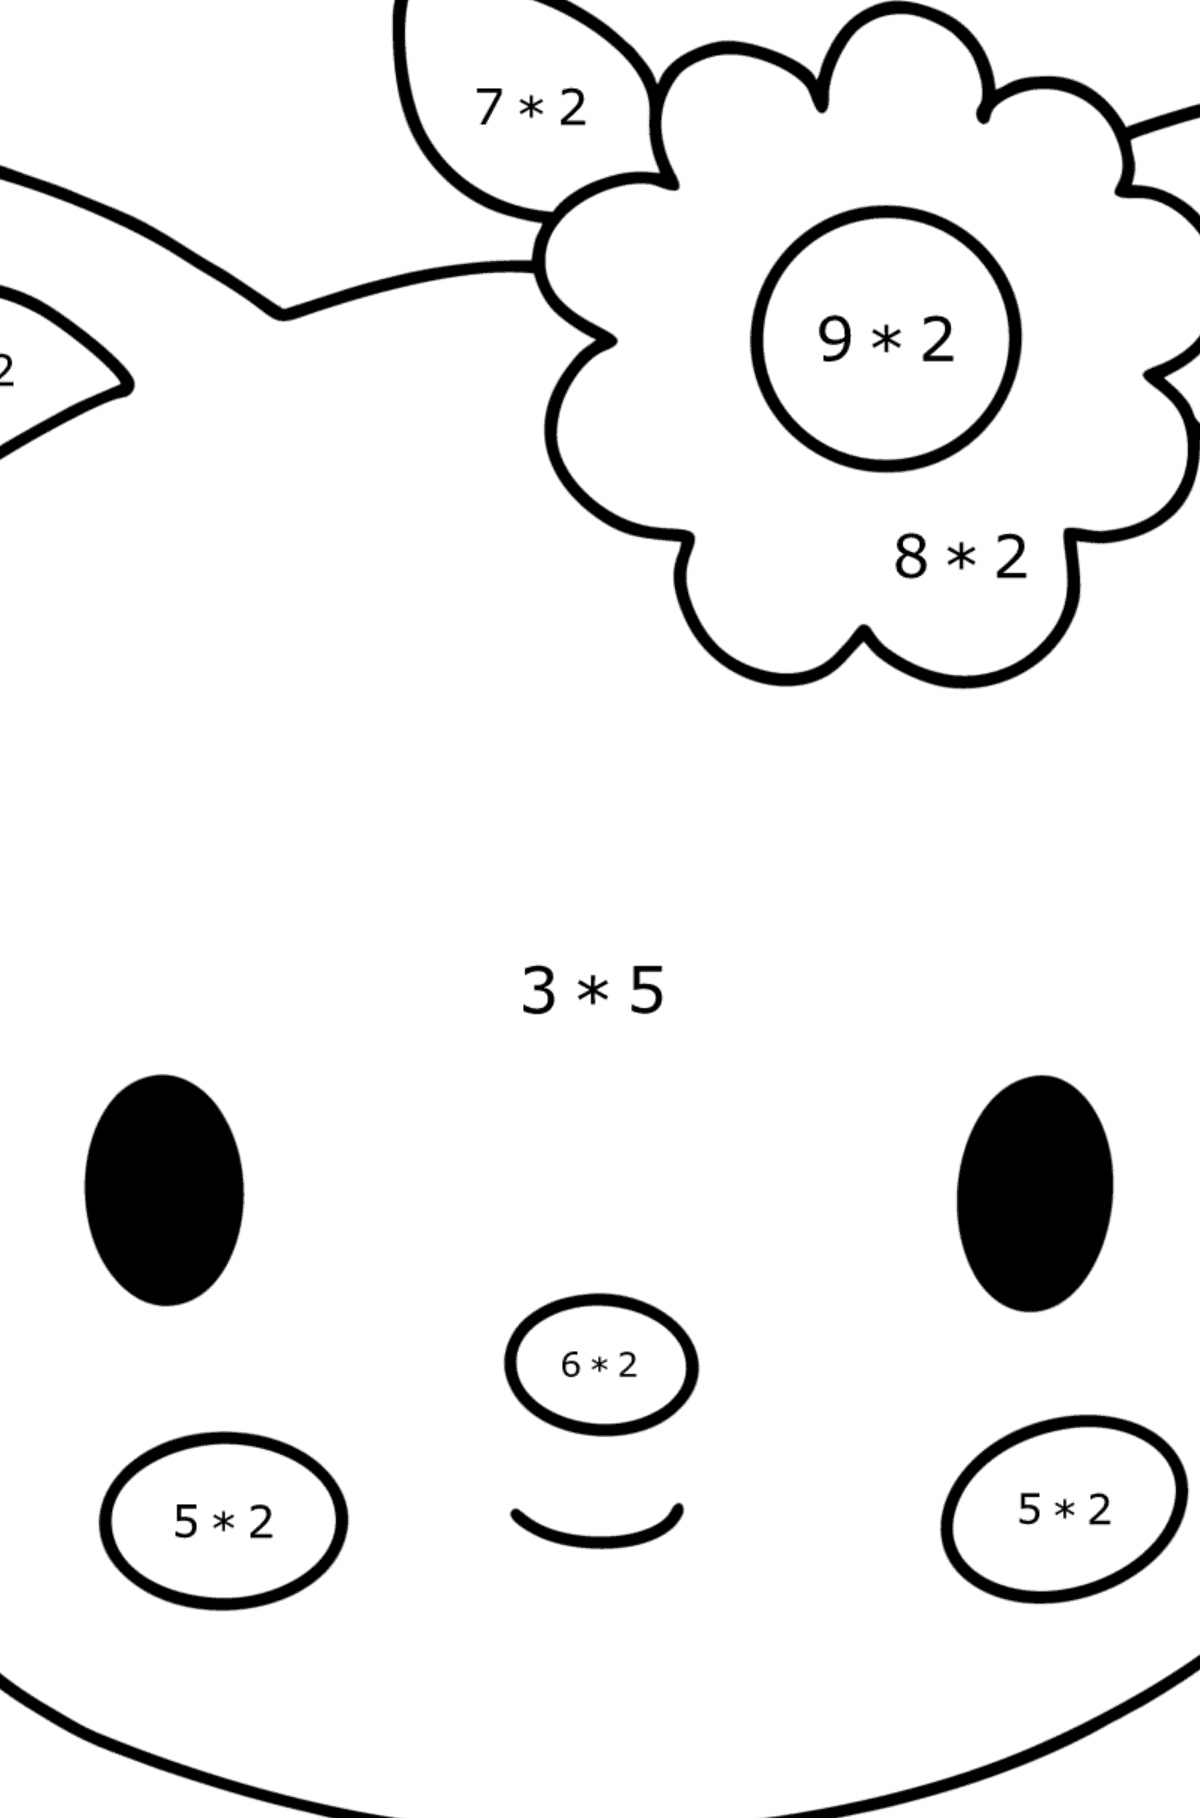 Desenho para colorir de focinho Hello Kitty - Colorindo com Matemática - Multiplicação para Crianças